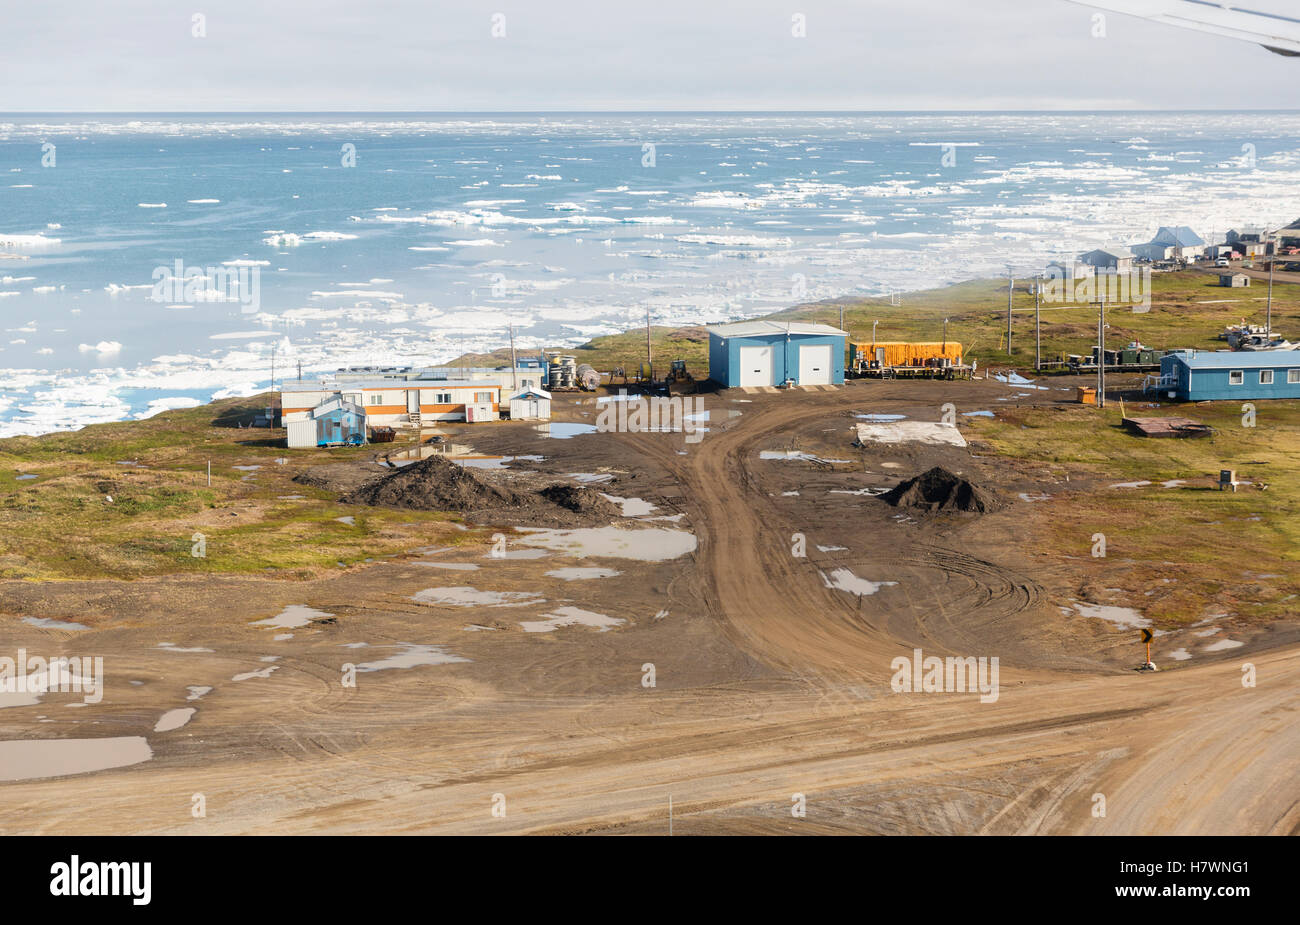 Vue aérienne de routes côtières et de logement en Barrow, la glace de mer flottant dans l'océan Arctique dans l'arrière-plan, Barrow, Alaska, USA, de l'Arctique l'été Banque D'Images